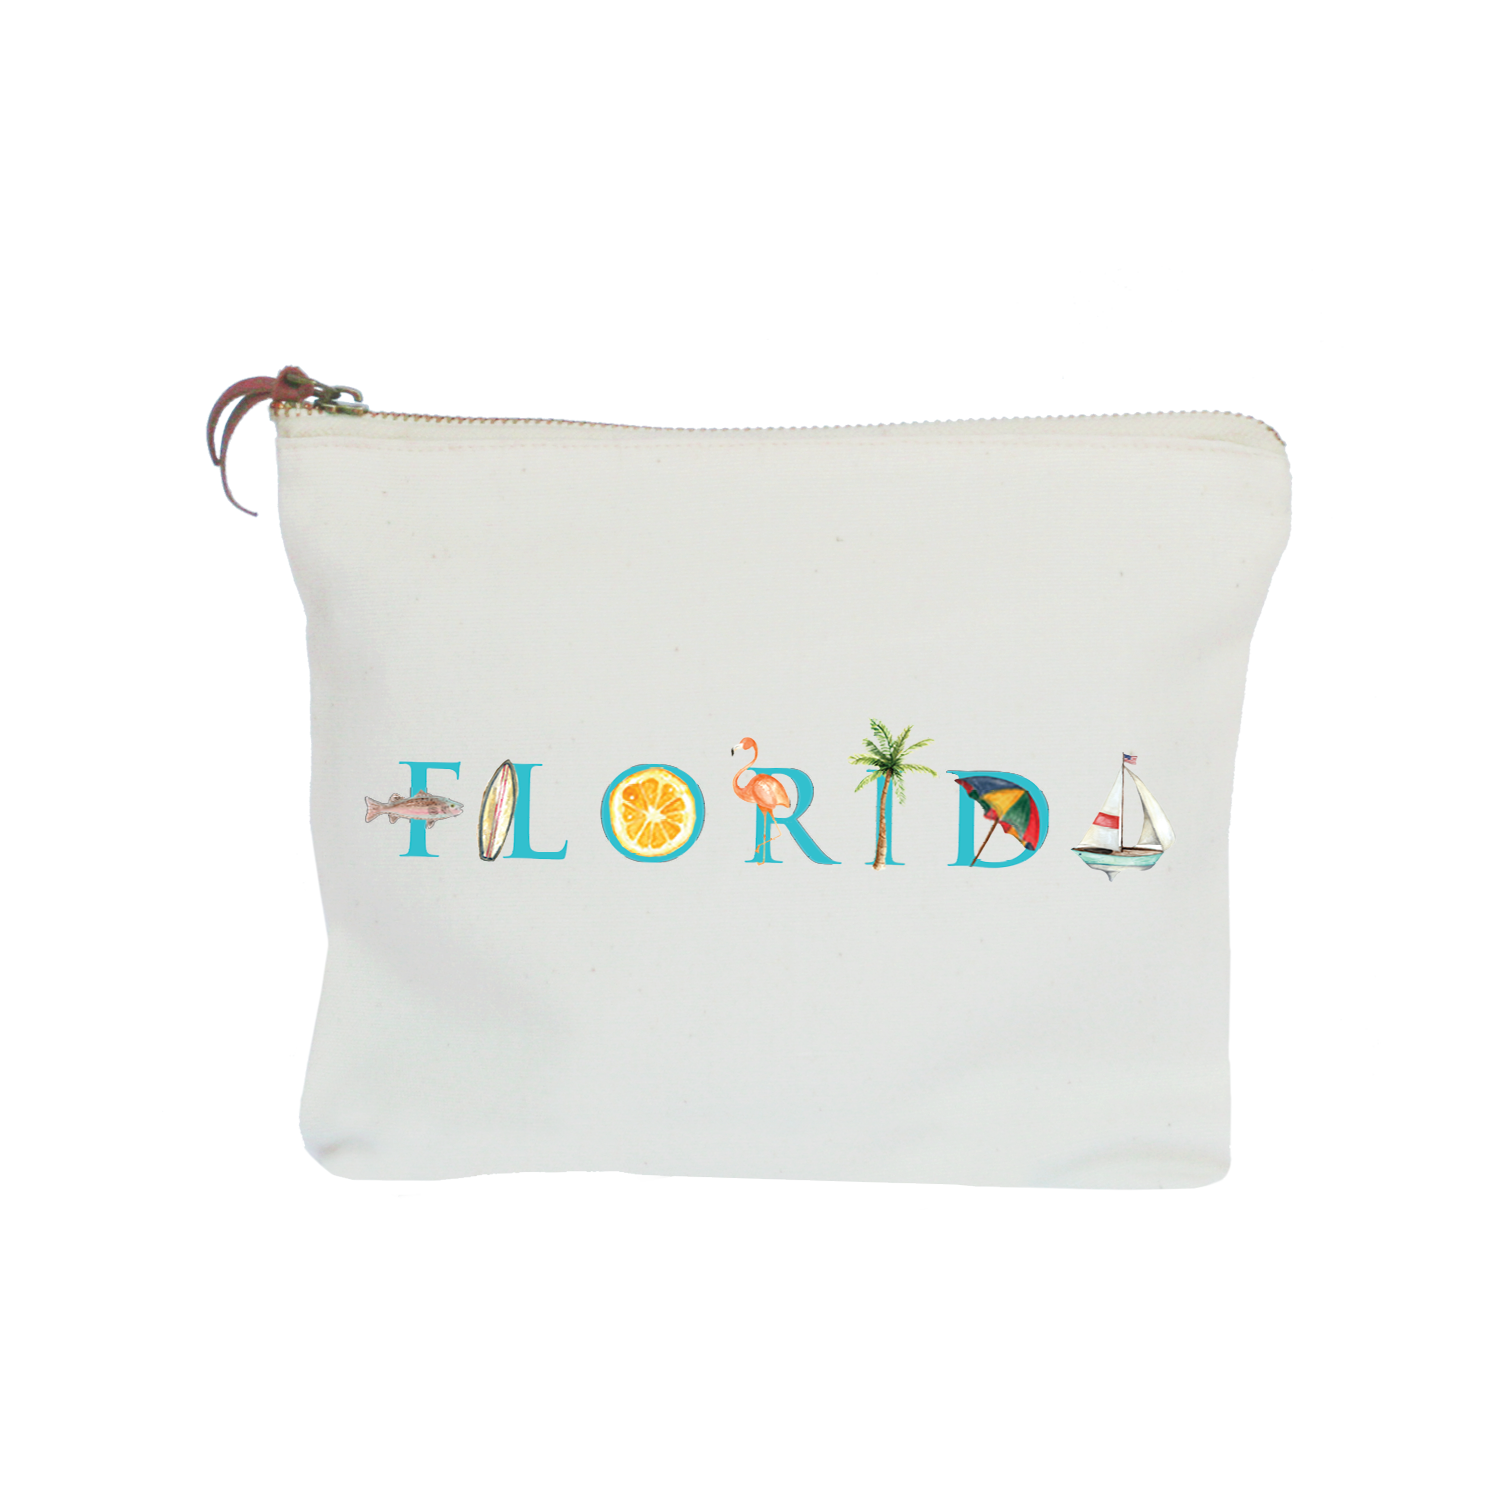 Florida zipper pouch